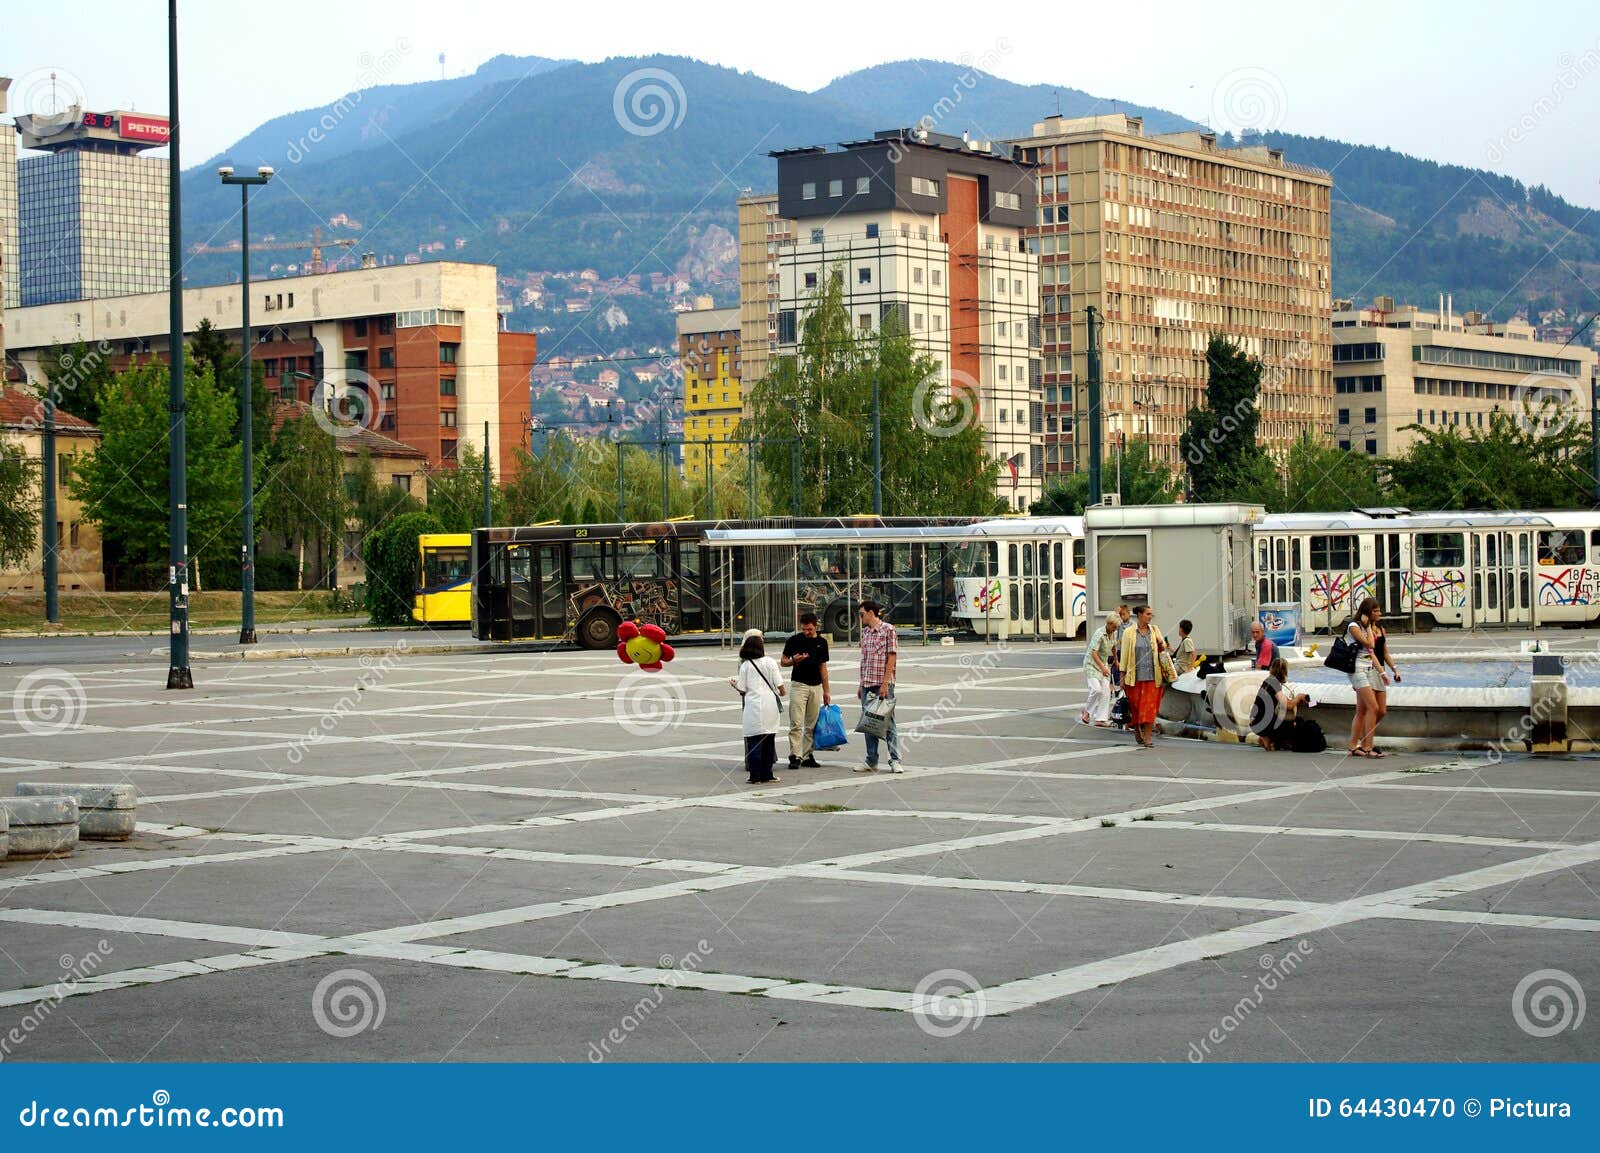 rail and tram station, sarajevo, bosnia herzegovina